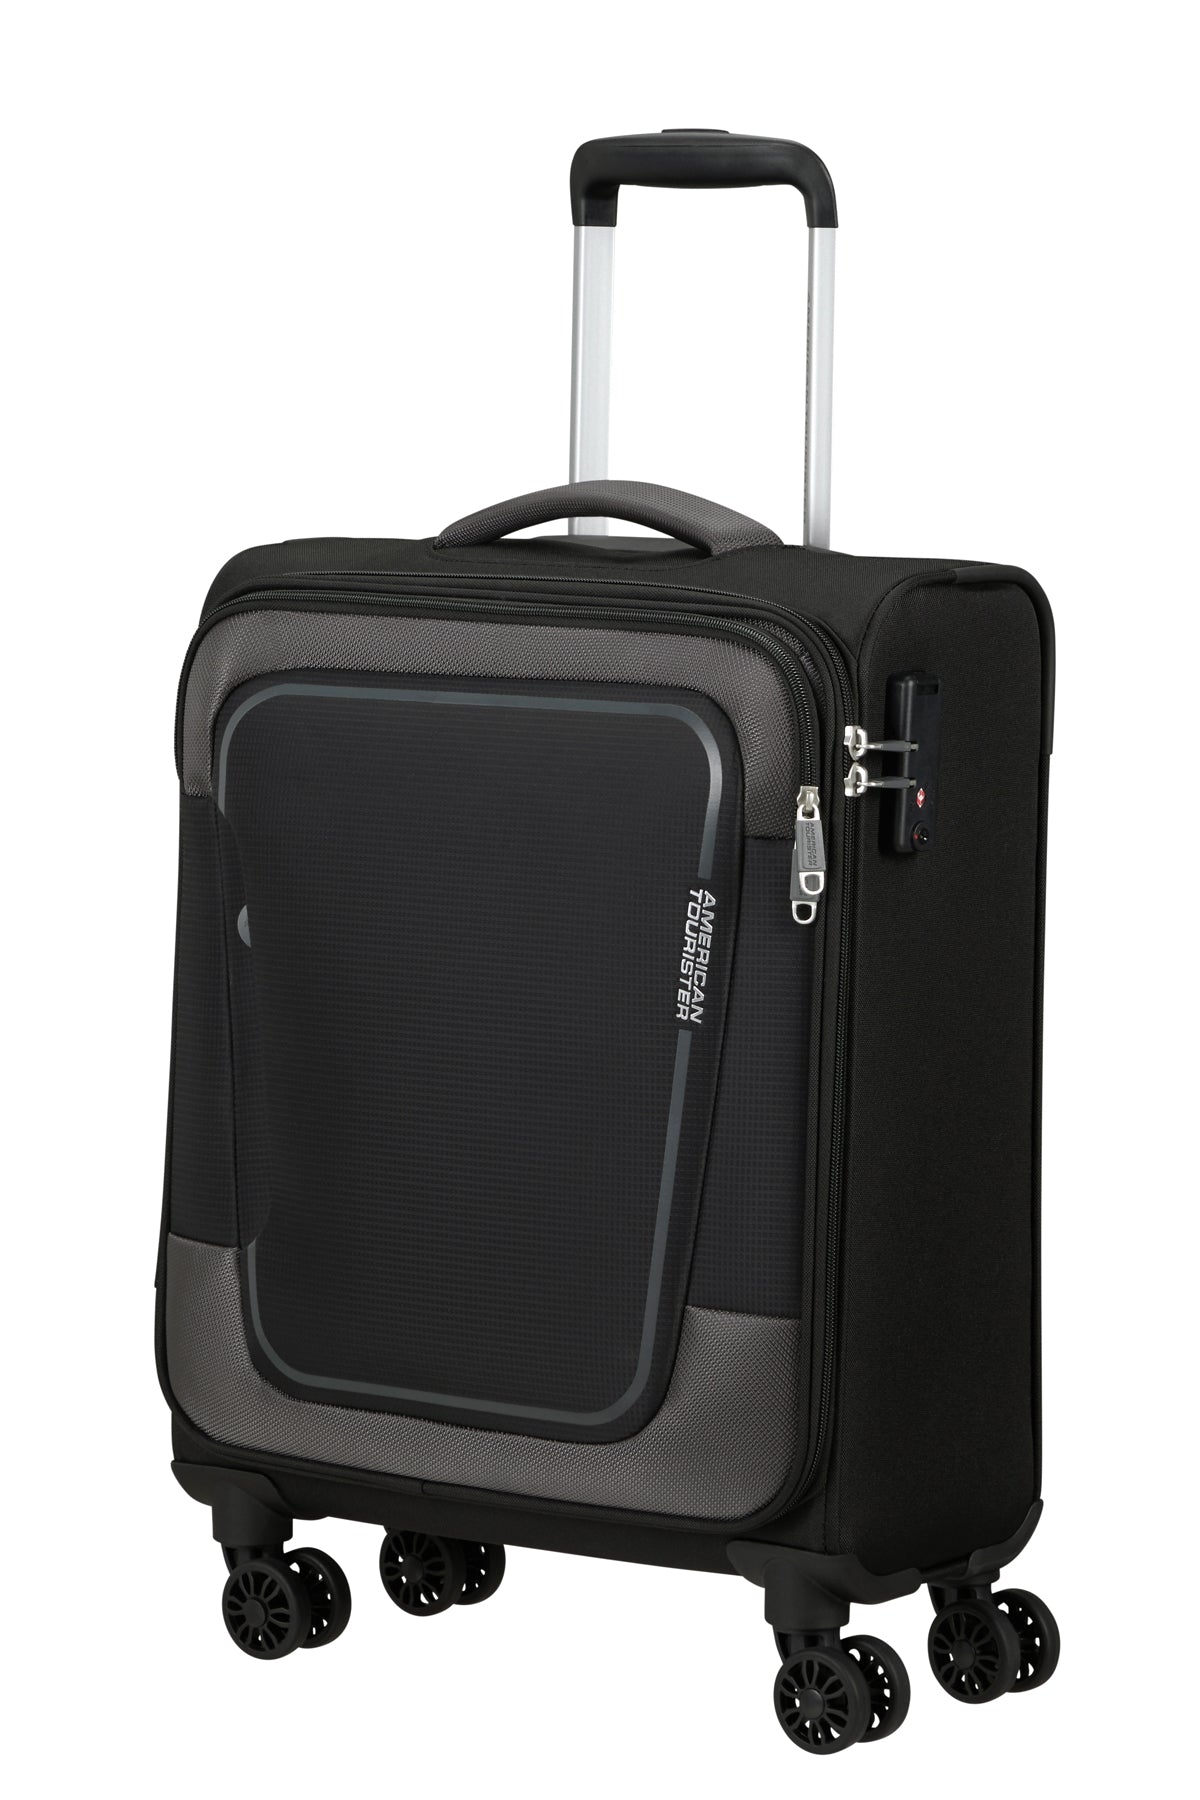 Handbagage koffer 4 wielen H55XB40xD20/23 cm